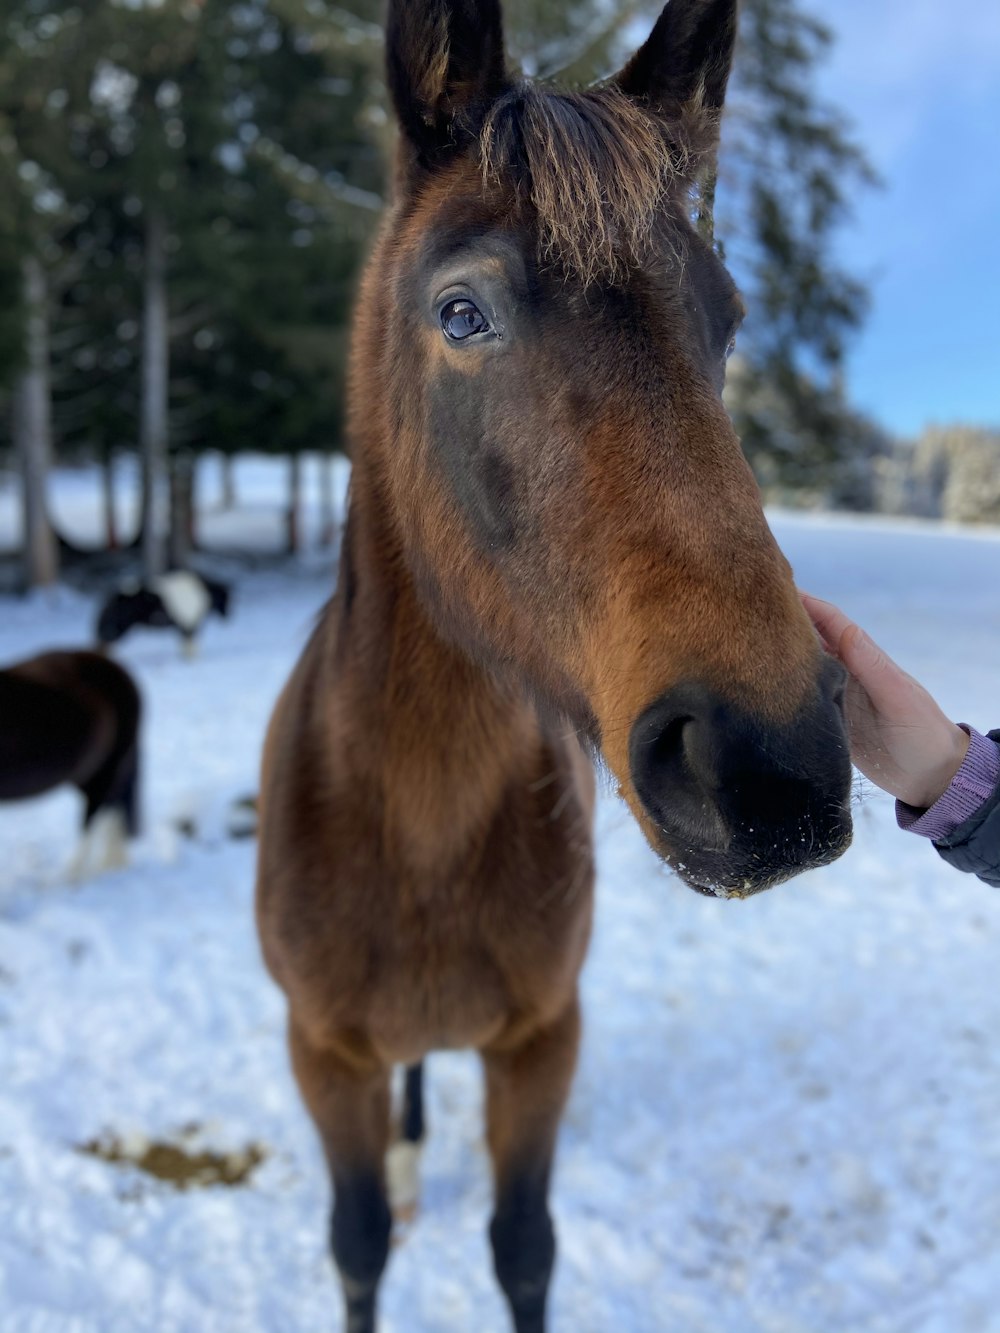 Braunes Pferd tagsüber auf schneebedecktem Boden